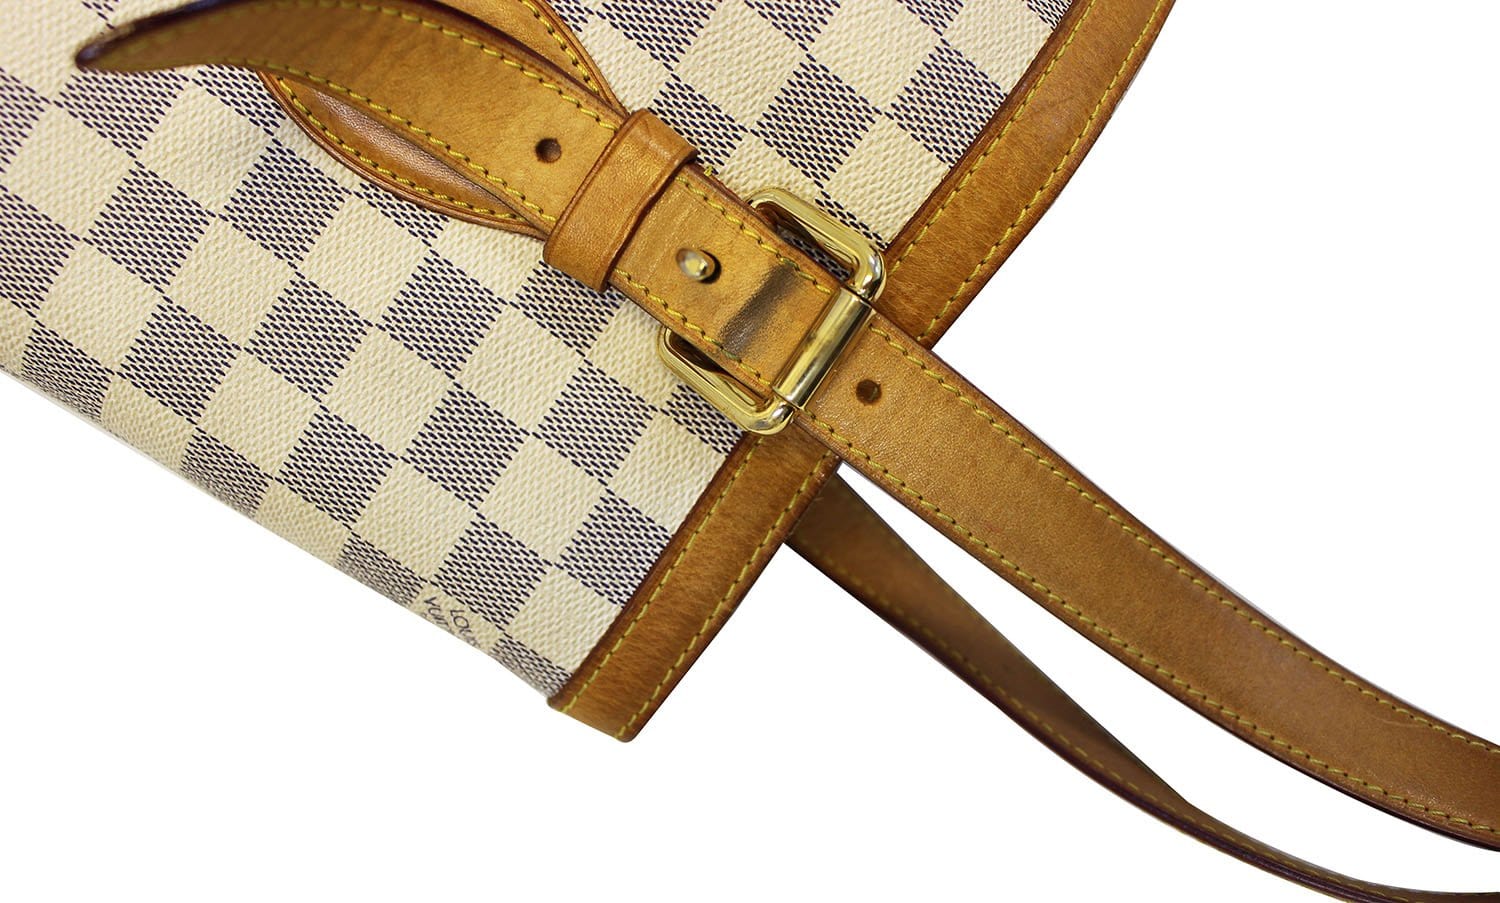 Louis Vuitton Damier Azur Hampstead MM - Neutrals Shoulder Bags, Handbags -  LOU740909